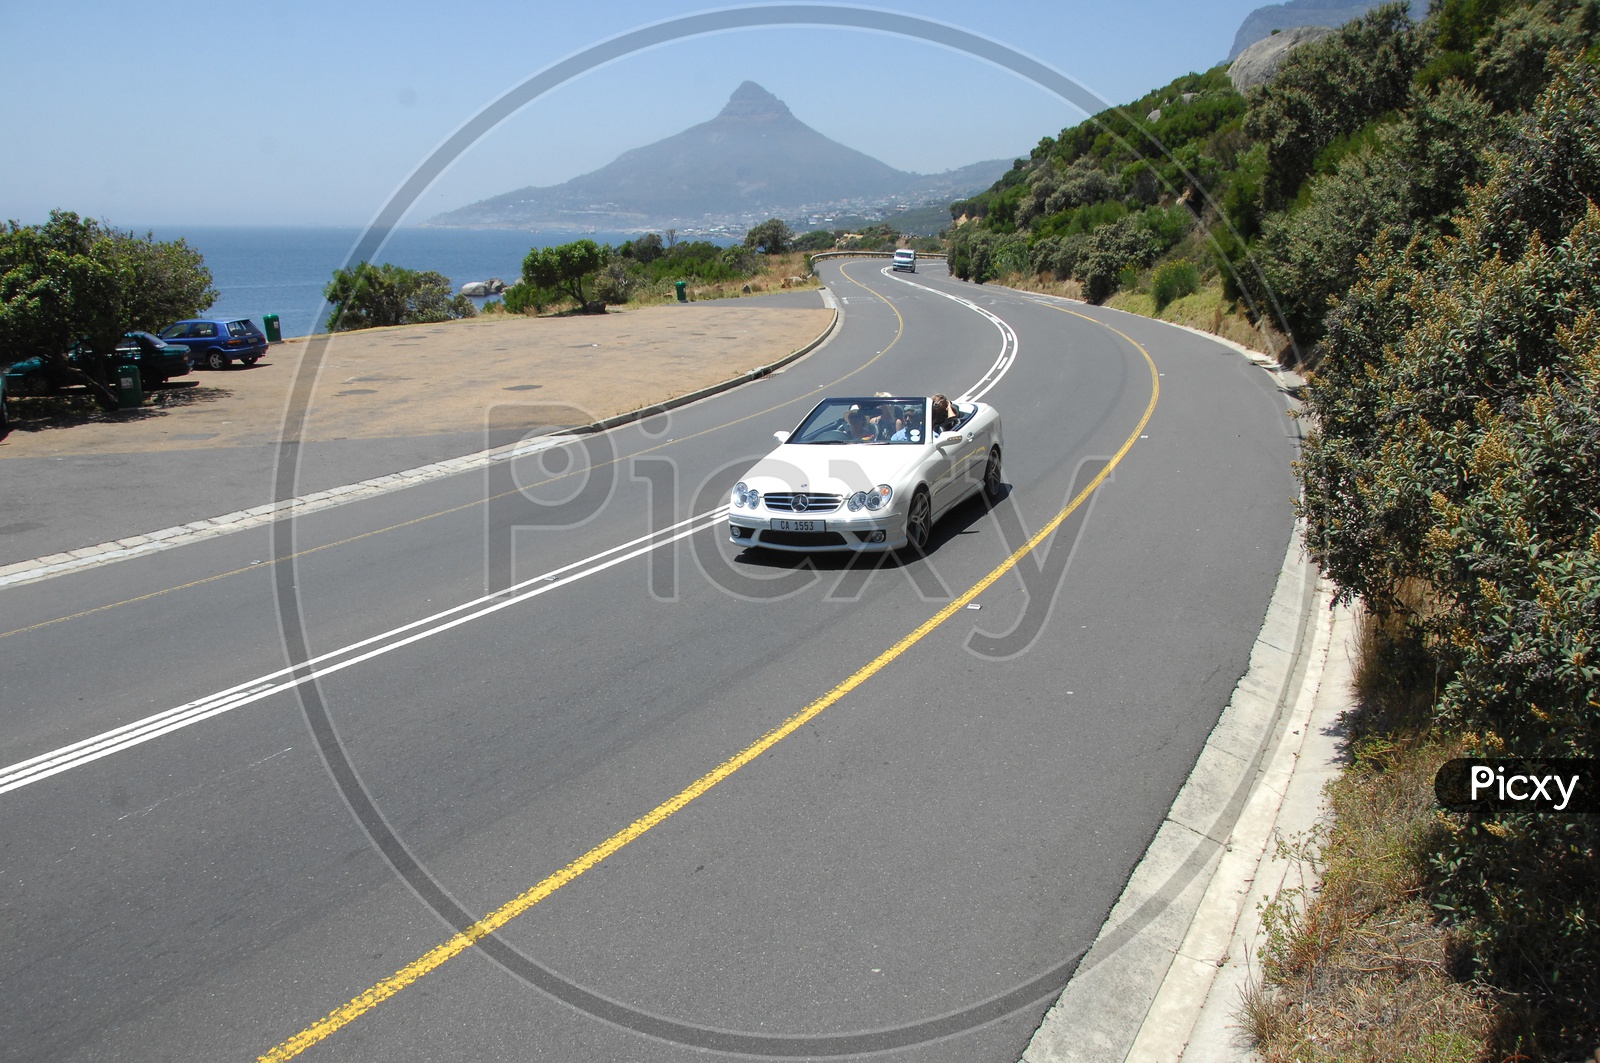 Mercedez Benz Car moving along the curvy road